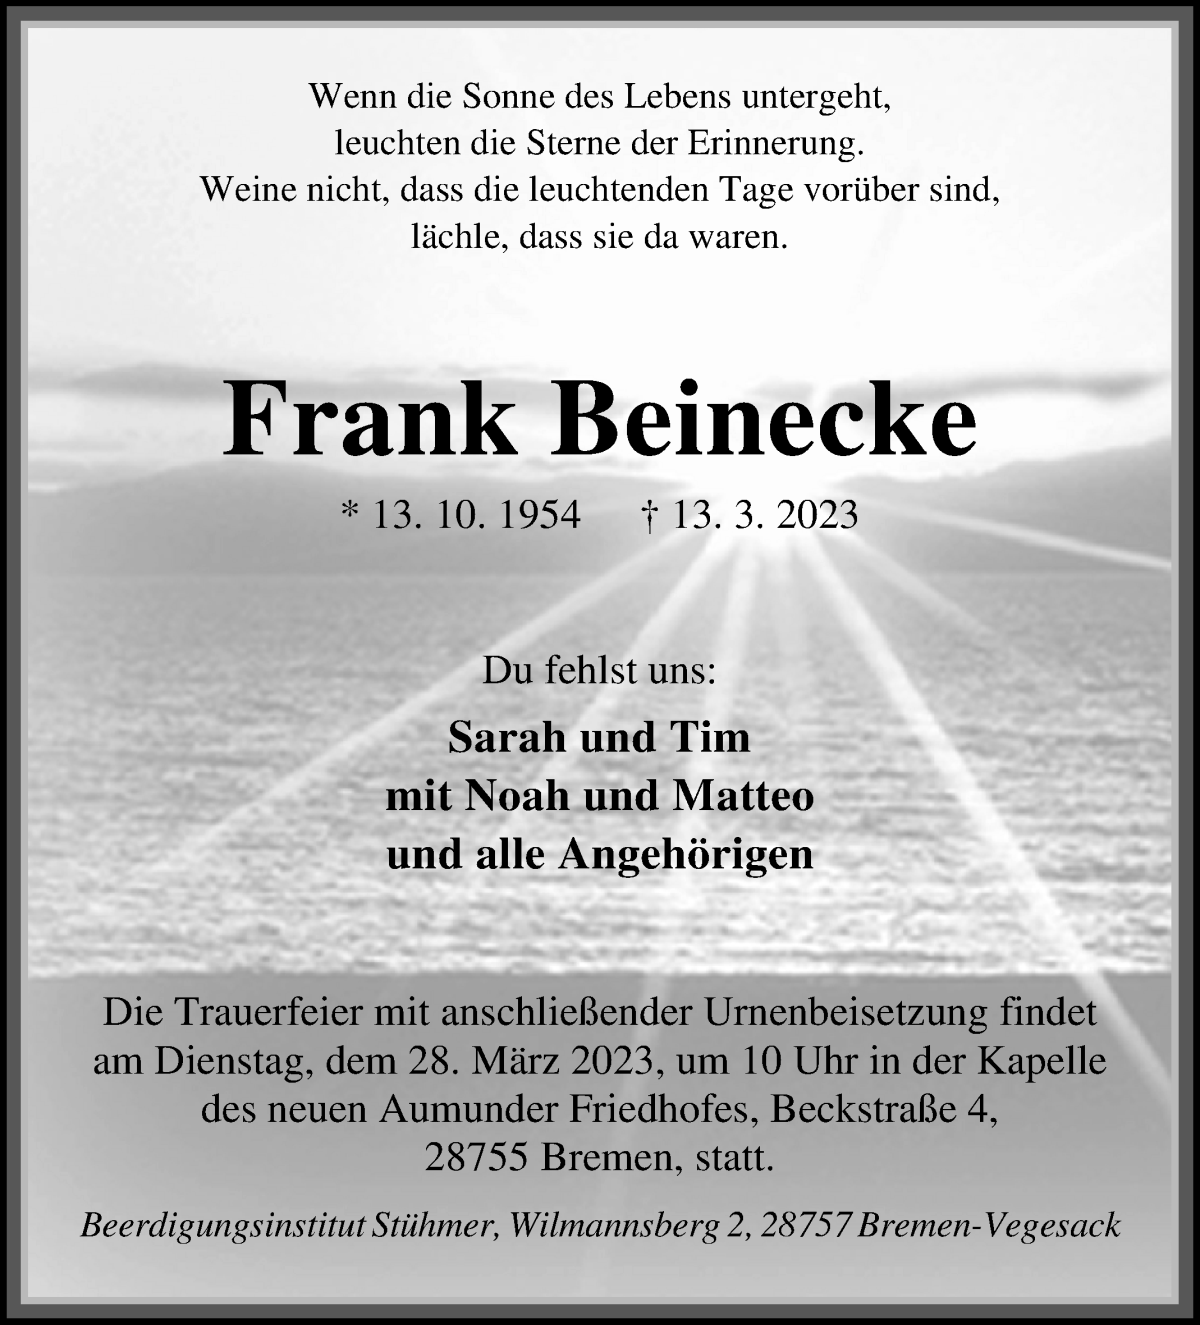 Frank Beinecke Traueranzeige 19cb5bfa B528 4f0d 92a3 6f58c8e1d97a 